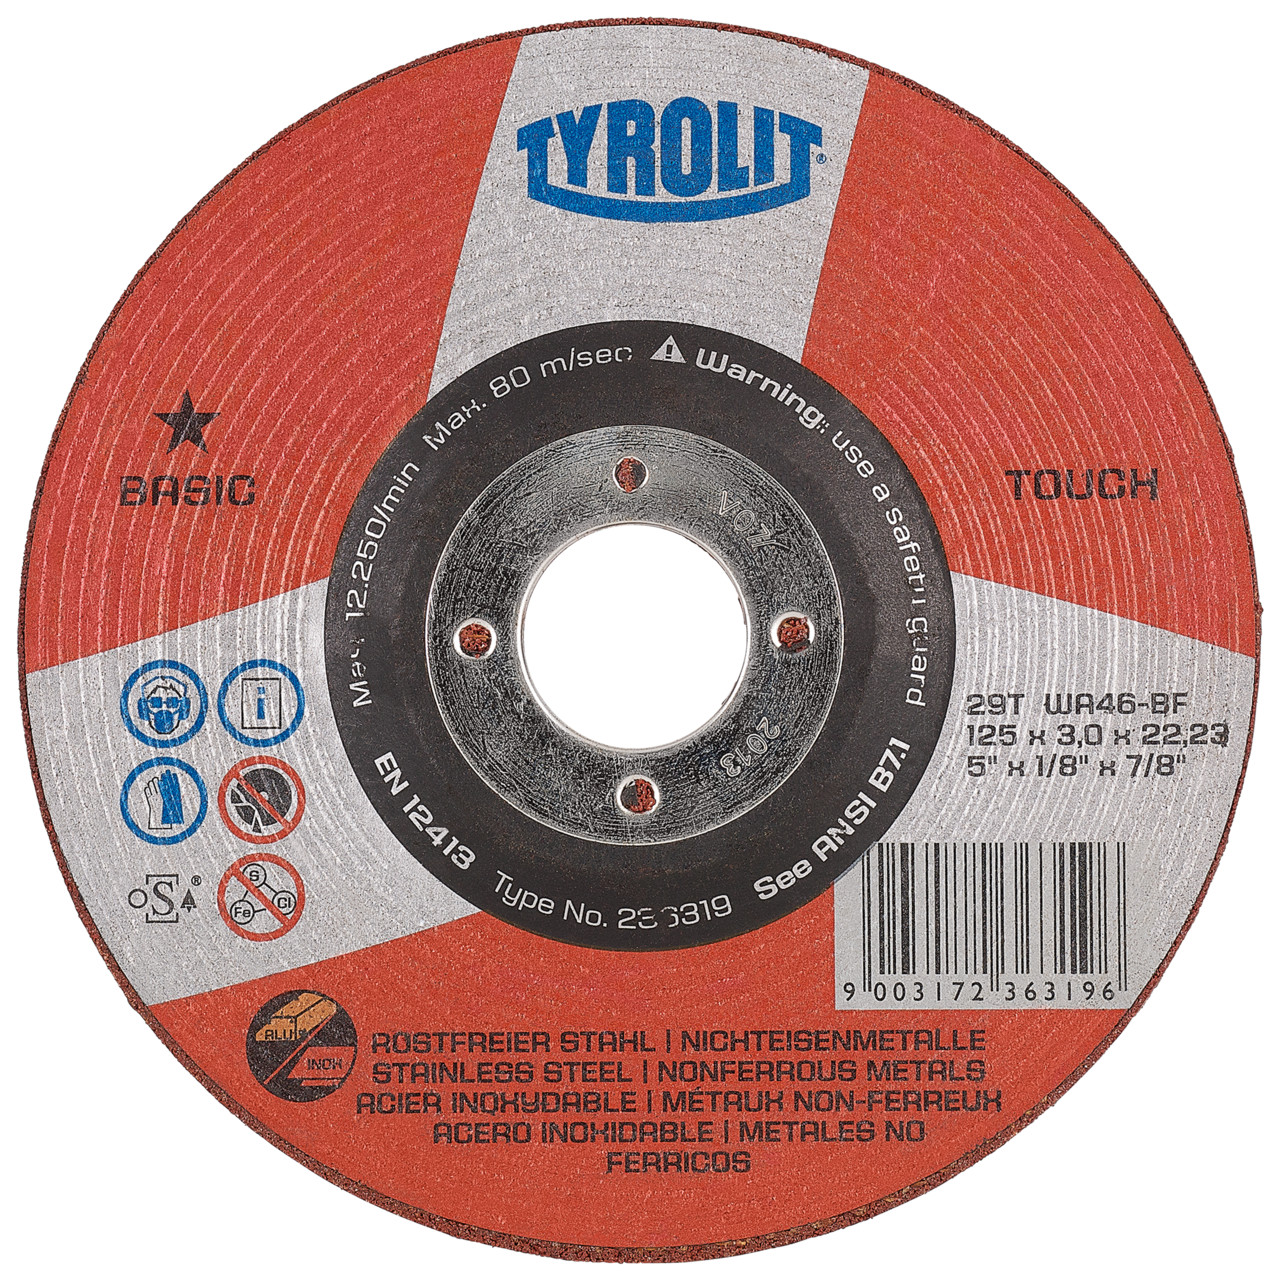 TYROLIT Disque abrasif DxH 115x22,23 TOUCH pour acier inoxydable et métaux non ferreux, forme : 29T - version déportée, Art. 236318